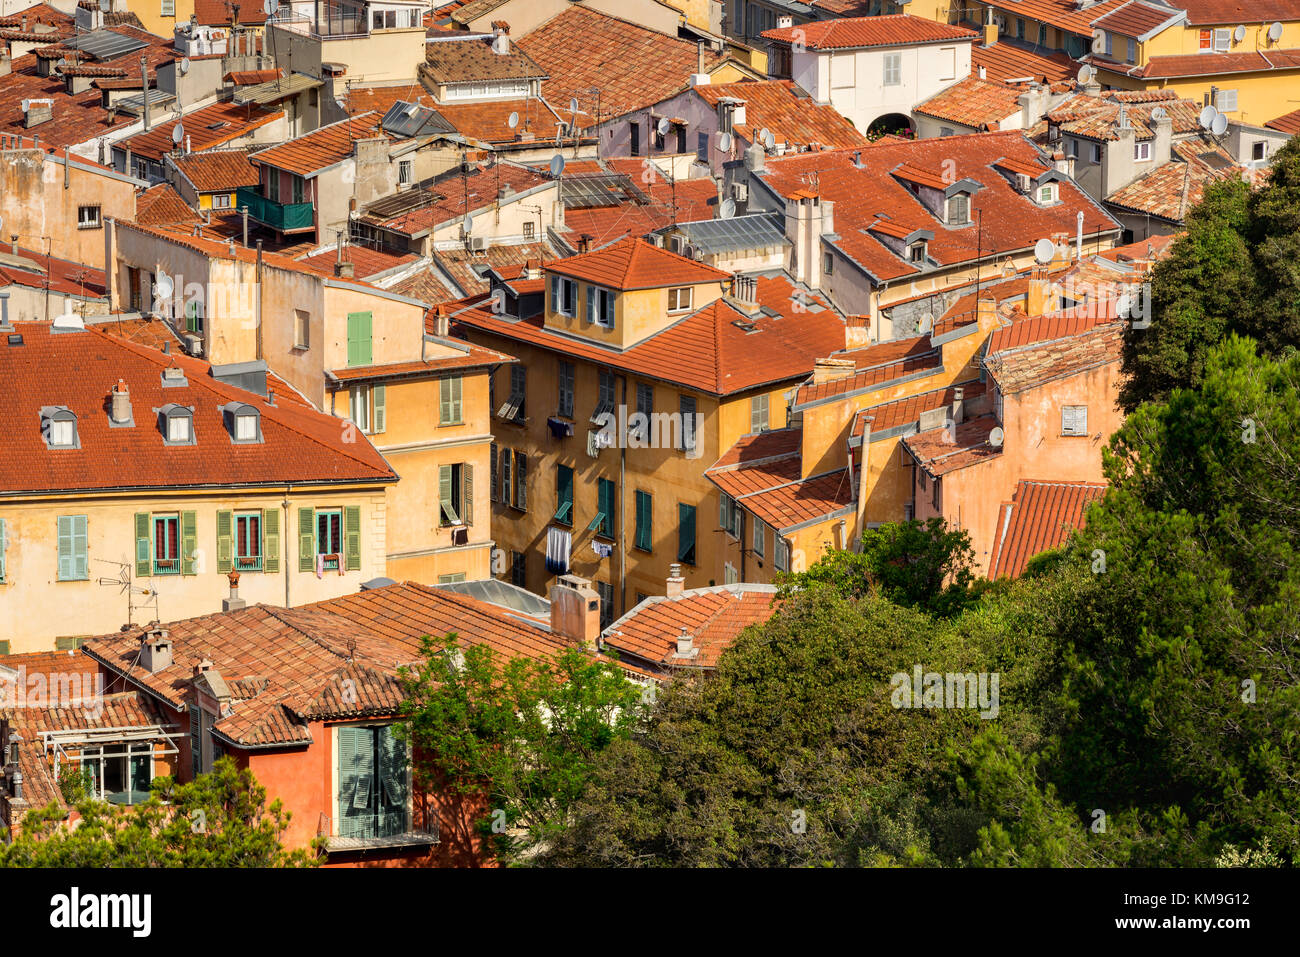 Die Dächer von Nizza im Sommer mit ihren unverwechselbaren Terracotta-Fliesen und Lamellenfensterläden. Côte d'Azur, Alpes Maritimes, Frankreich Stockfoto